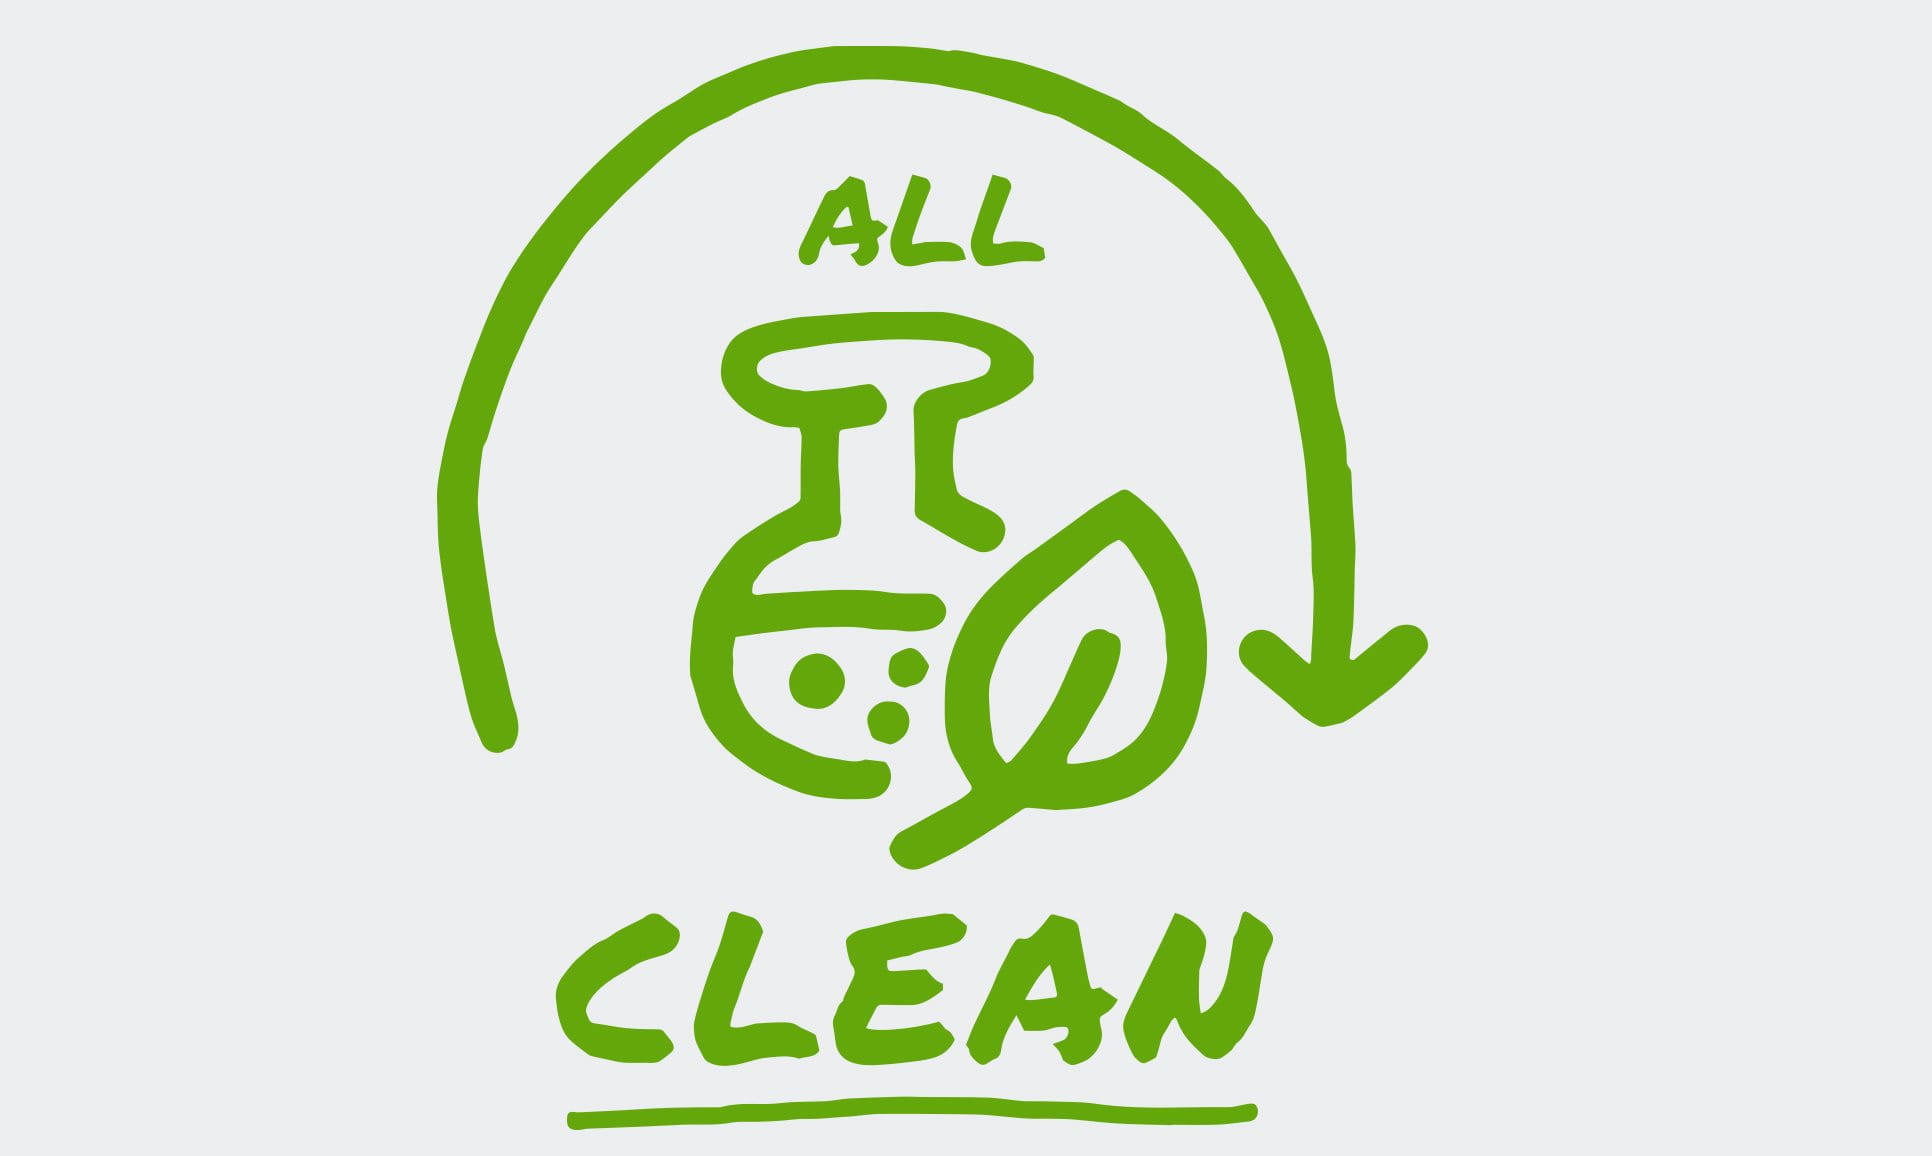 Een geïllustreerd pictogram toont een pijl die een halve cirkel vormt rond de woorden "All Clean", naast een blad en een beker.